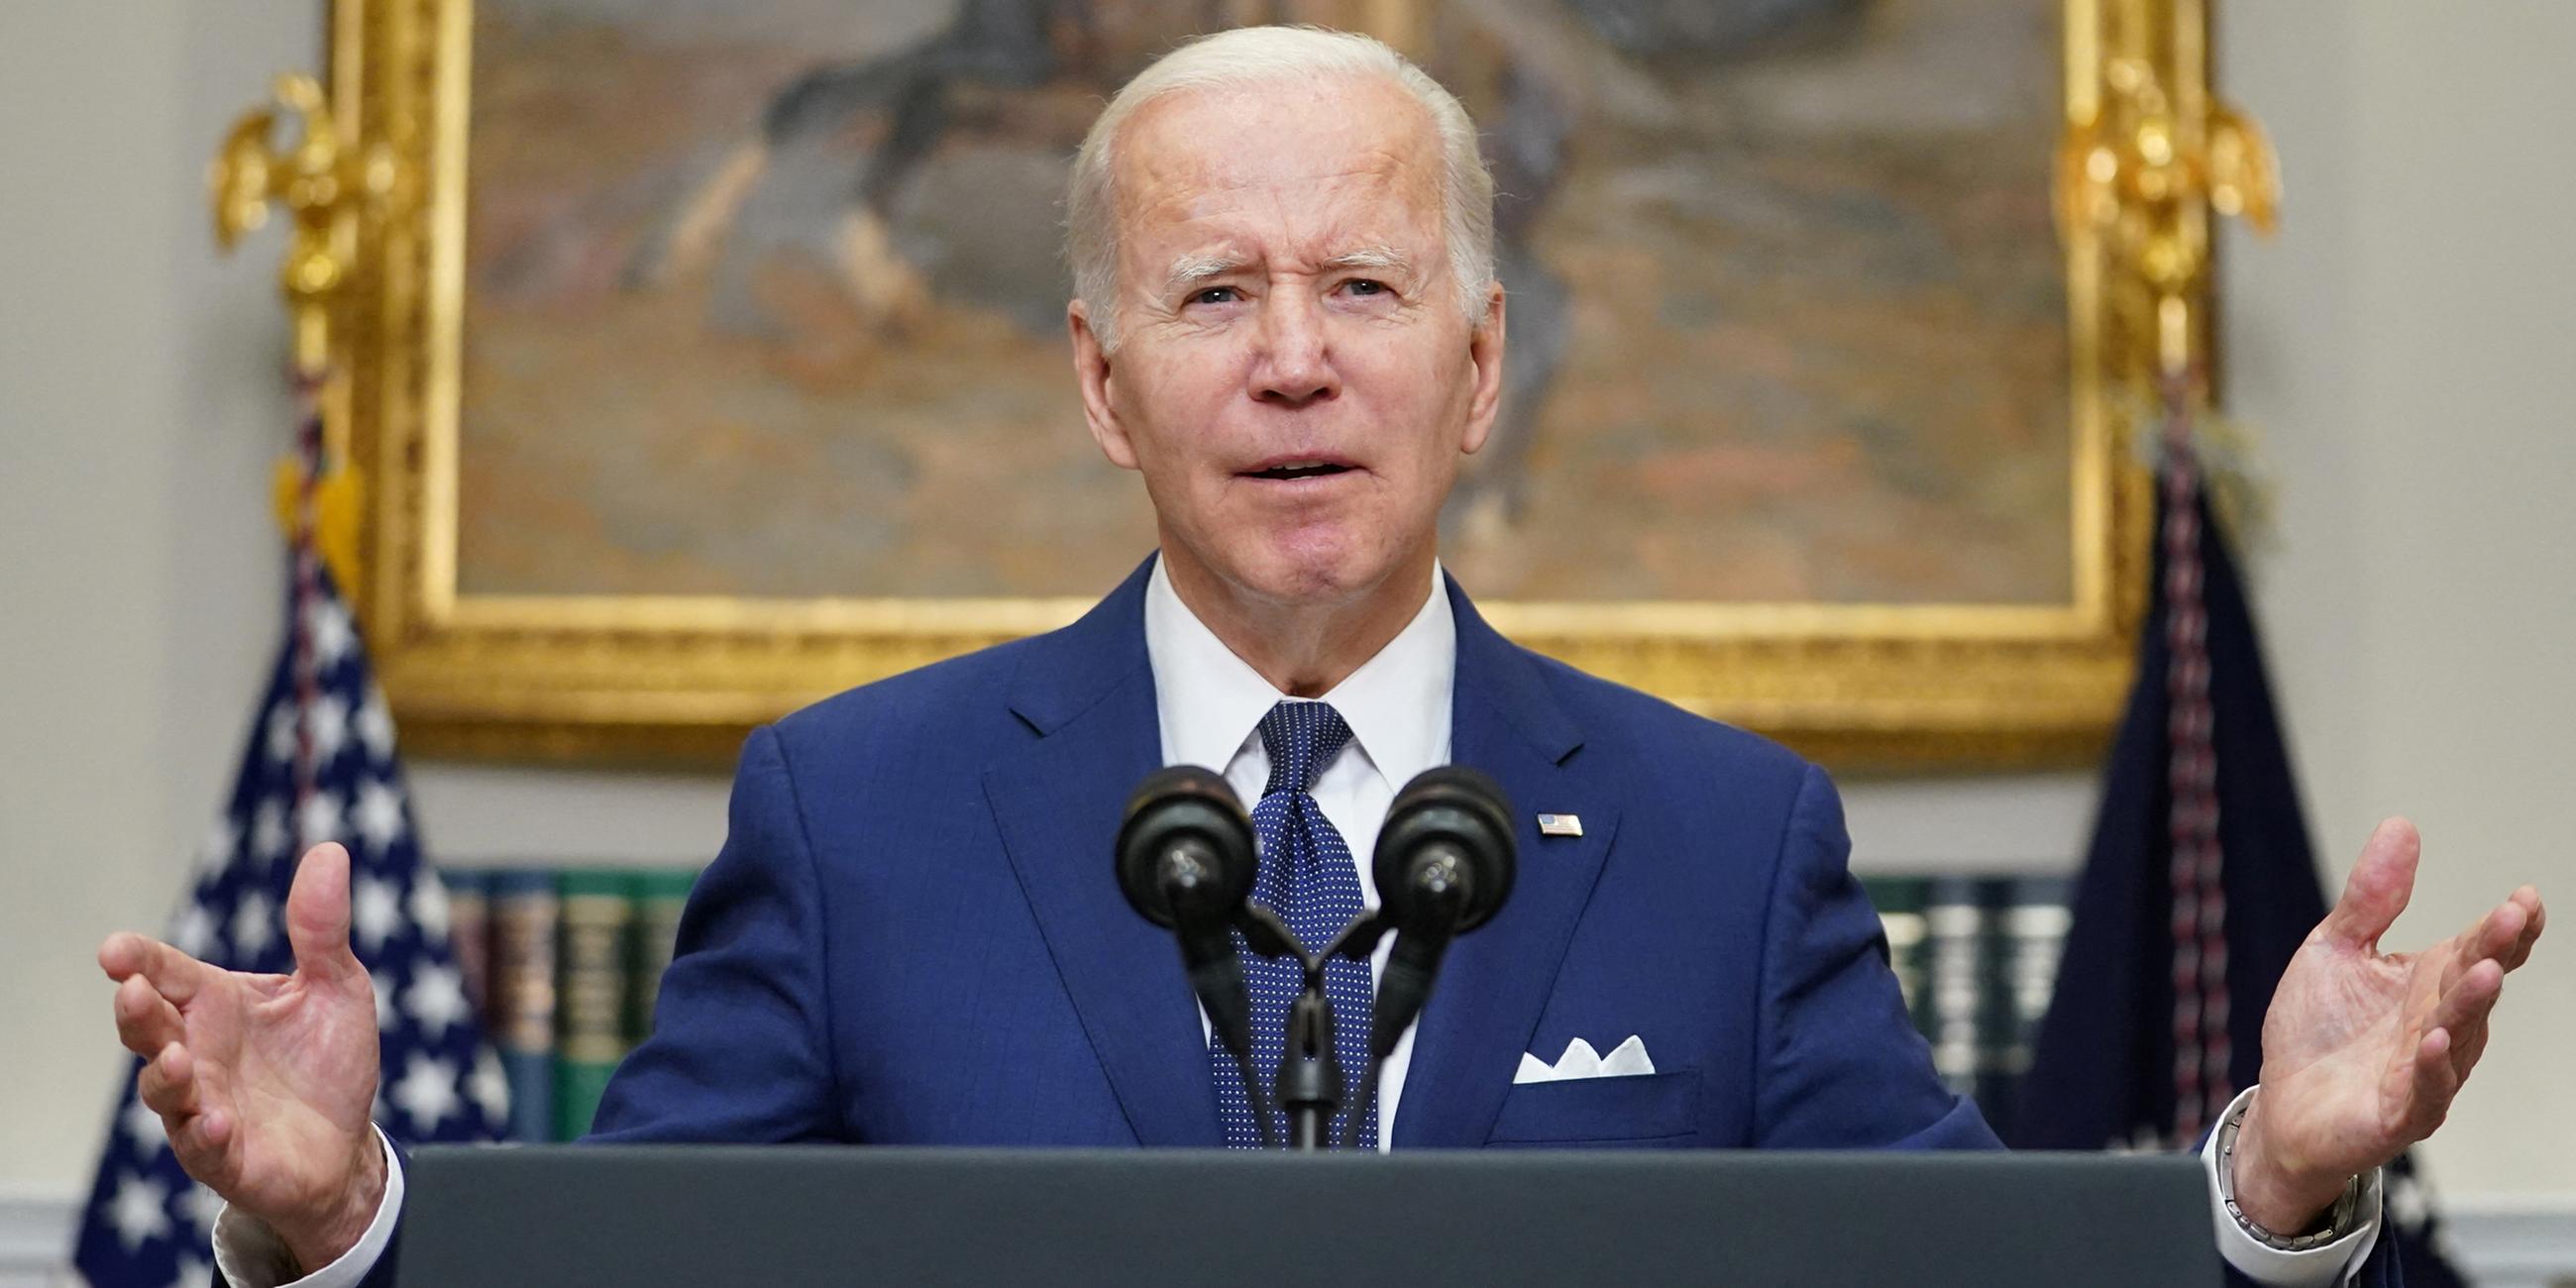 Präsident Joe Biden hält inne, als er am Dienstag, den 24. Mai 2022, vom Roosevelt Room im Weißen Haus in Washington über die Massenschießerei an der Robb Elementary School in Uvalde, Texas, spricht